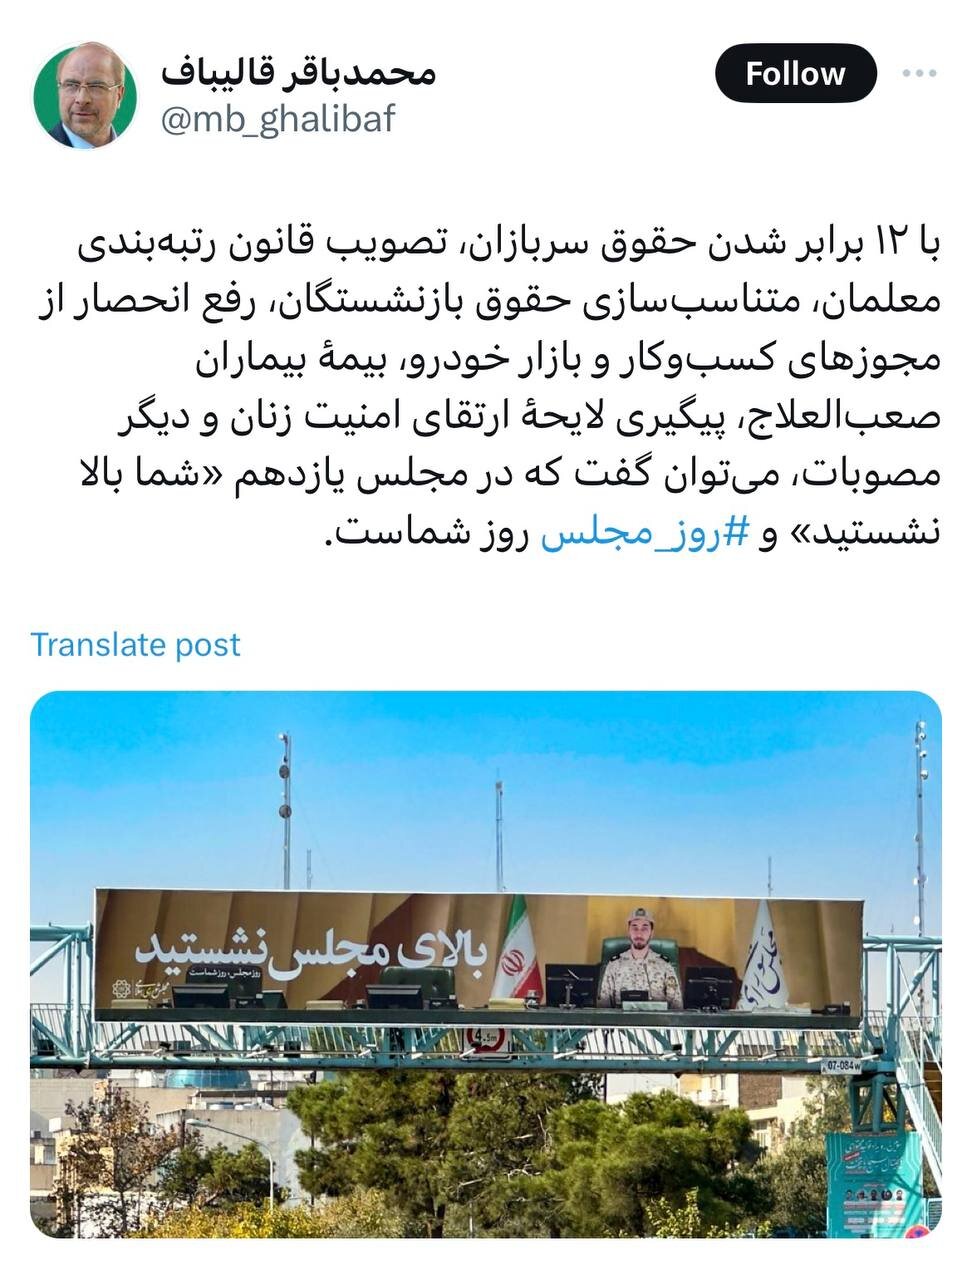 واکنش قالیباف به بیلبوردهای شهرداری تهران با تعریف و تمجید از مجلس یازدهم+عکس